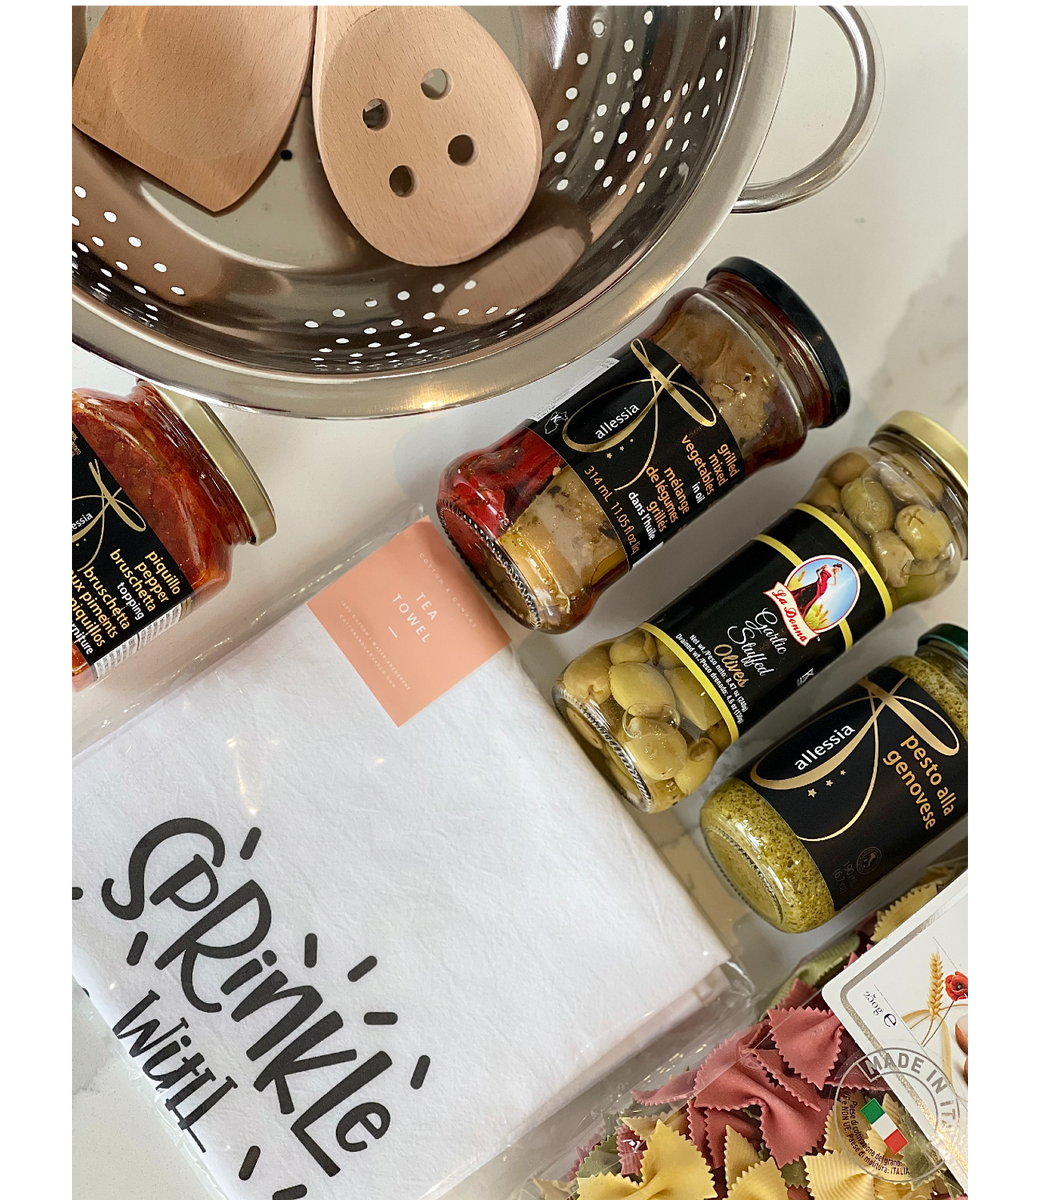 Pasta Night Kit – Modern Gift Giving